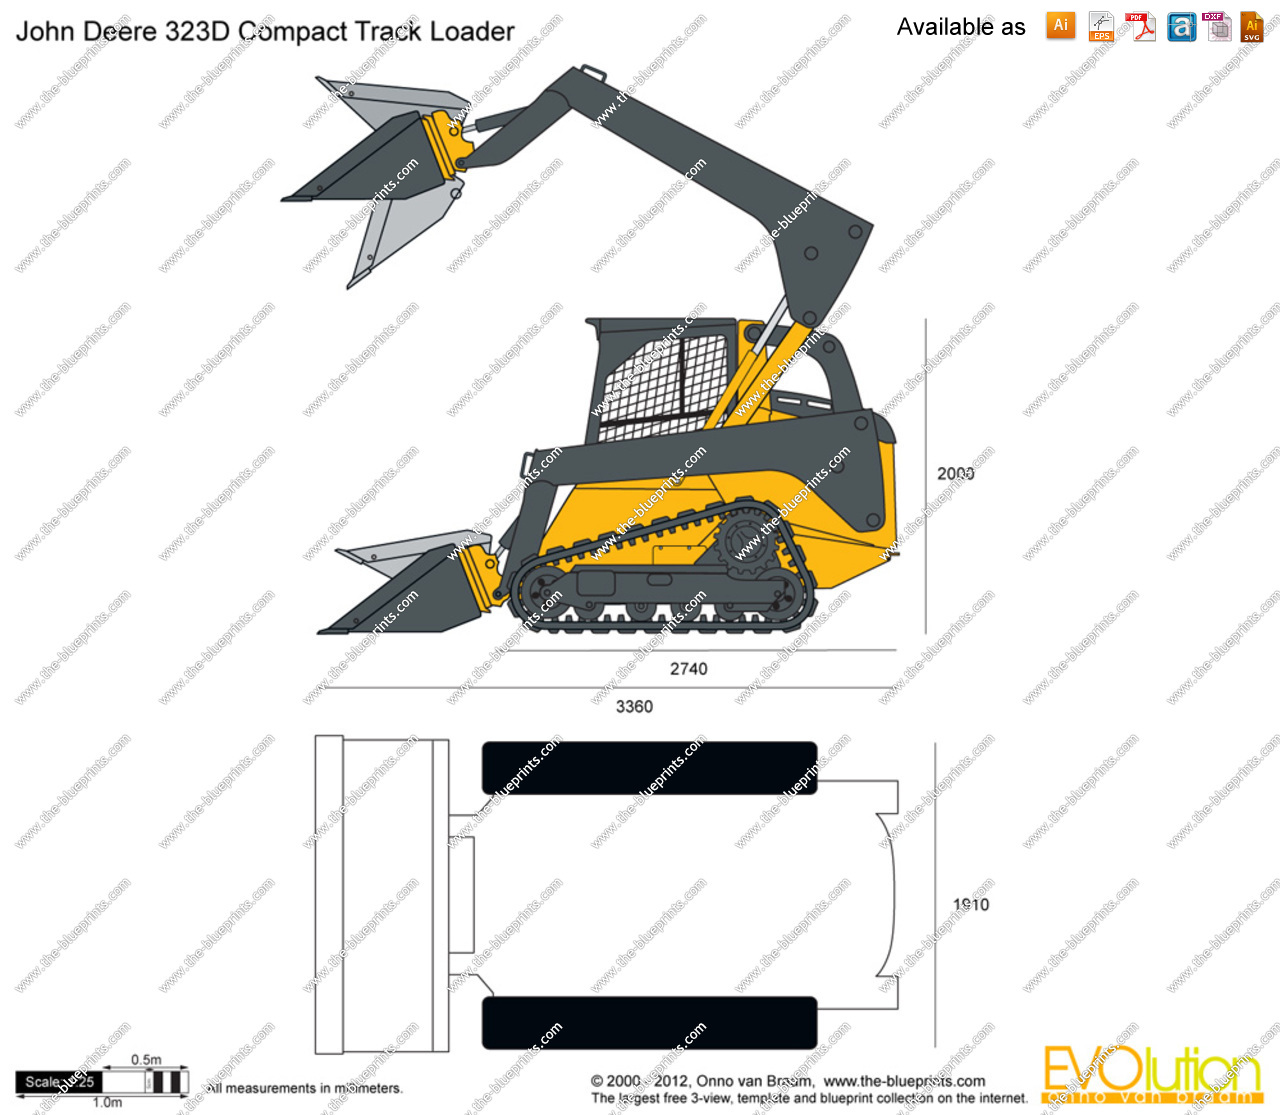     Blueprints Com   Vector Drawing   John Deere 323d Compact Track Loader